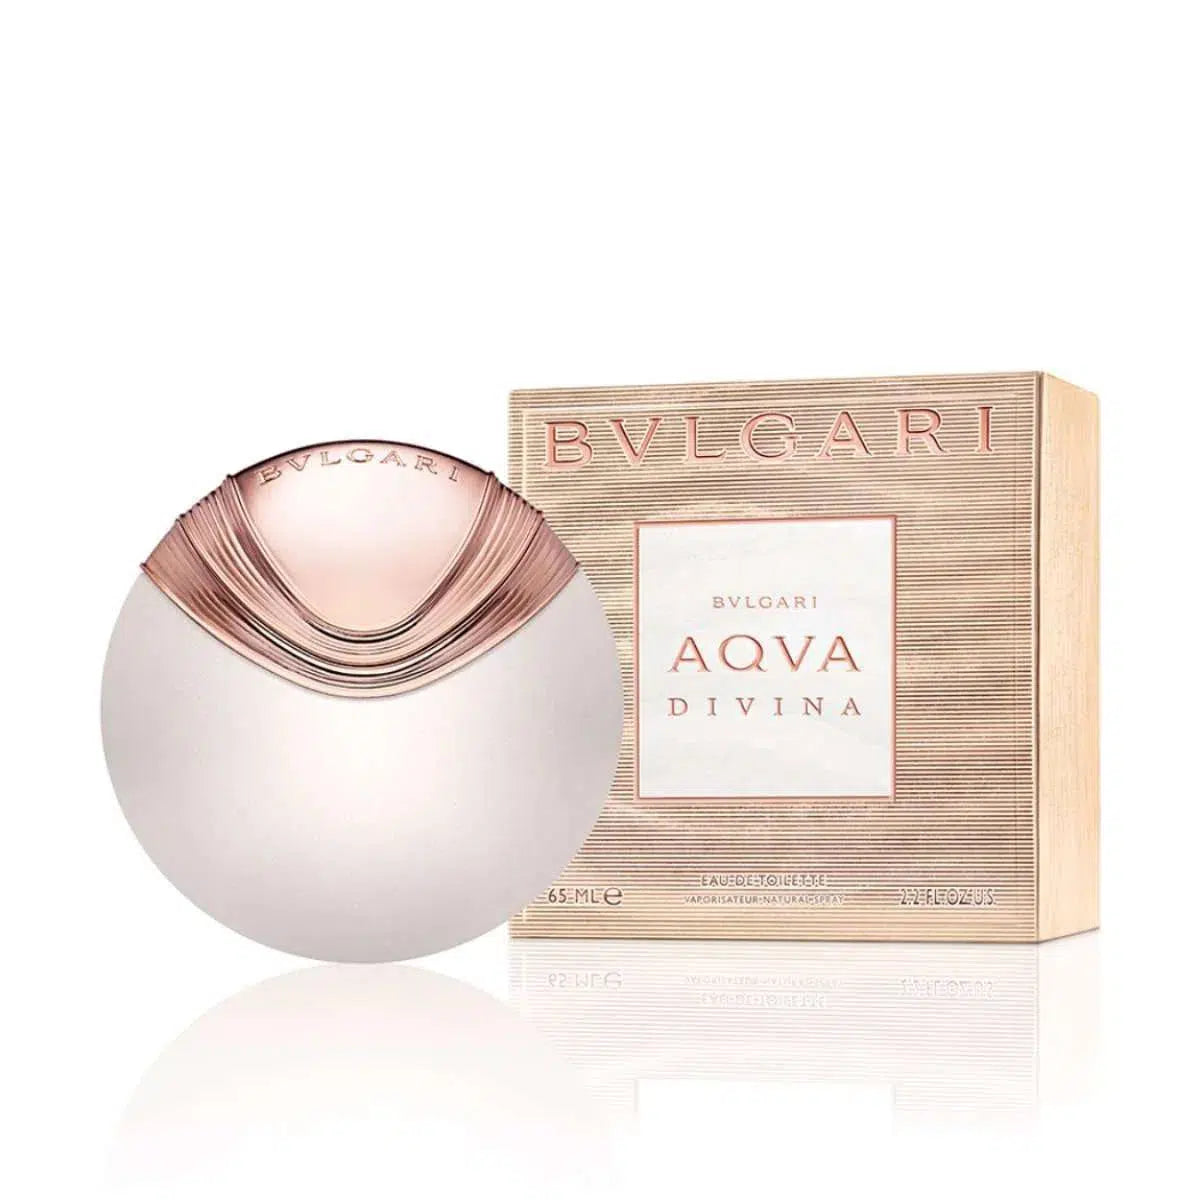 Bvlgari Divina 65ml - Perfume Philippines